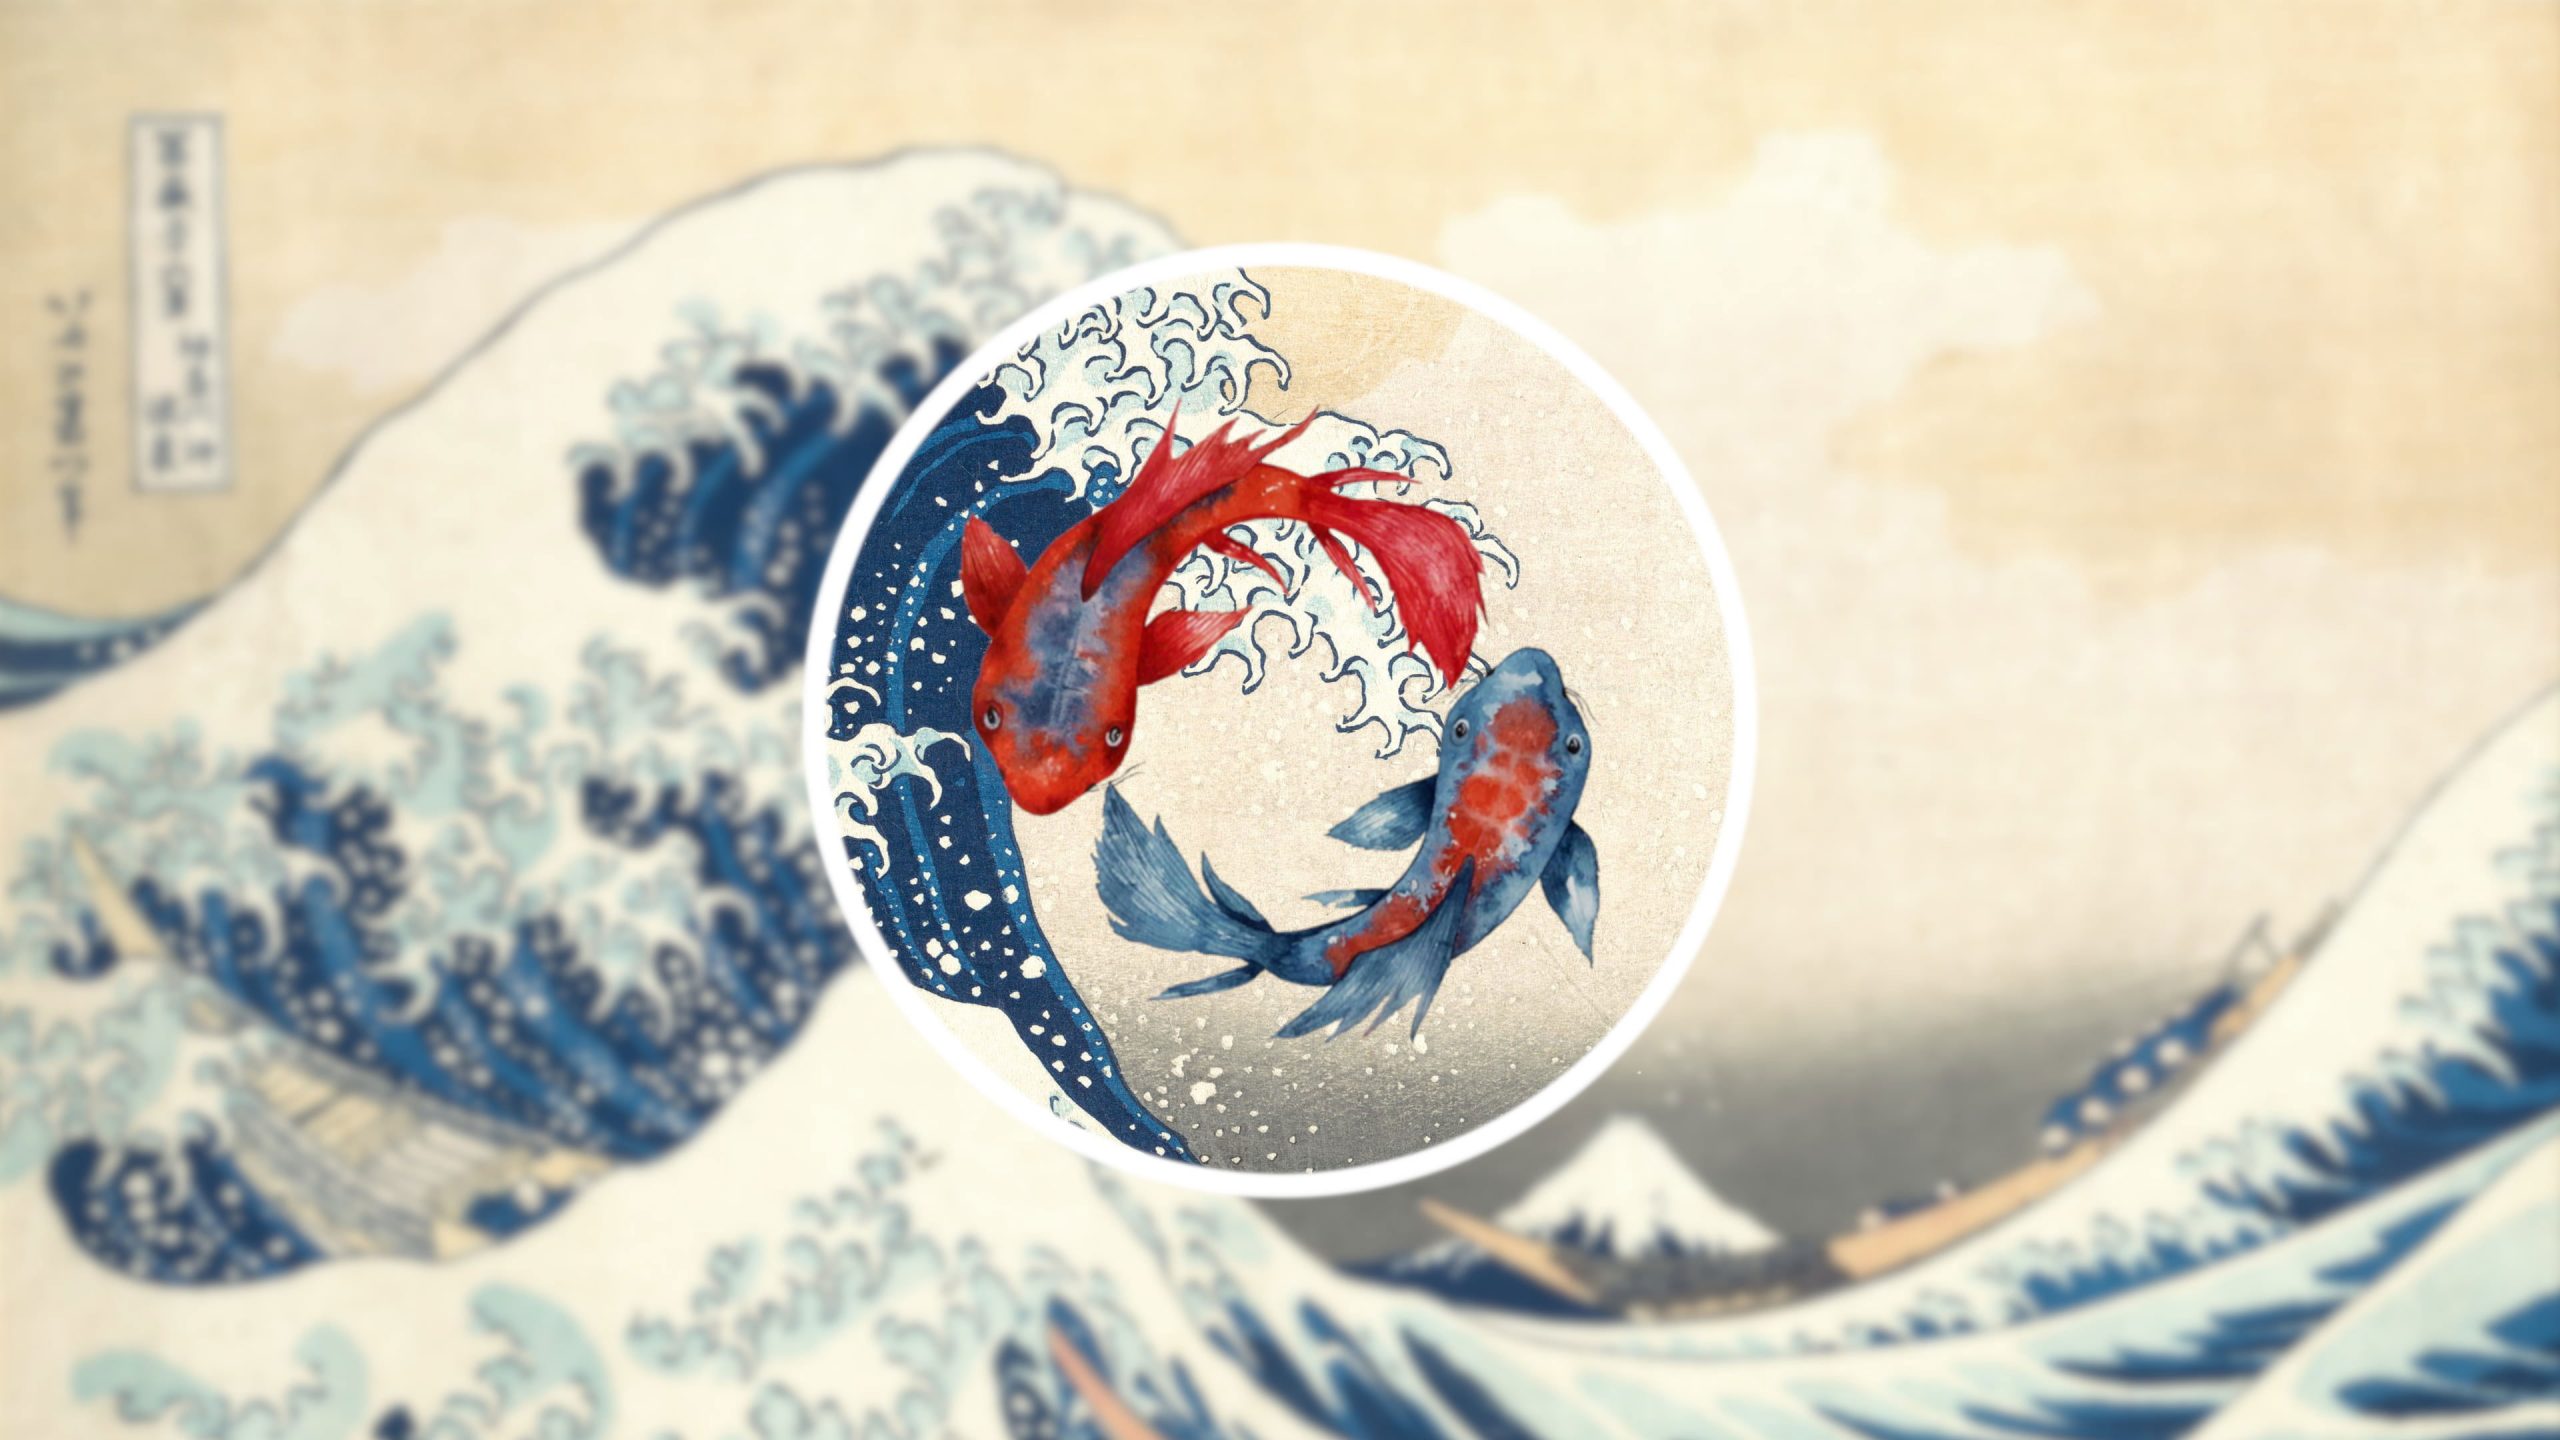 Wallpaper The Great Wave Off Kanagawa, Waves, Koi, Fish